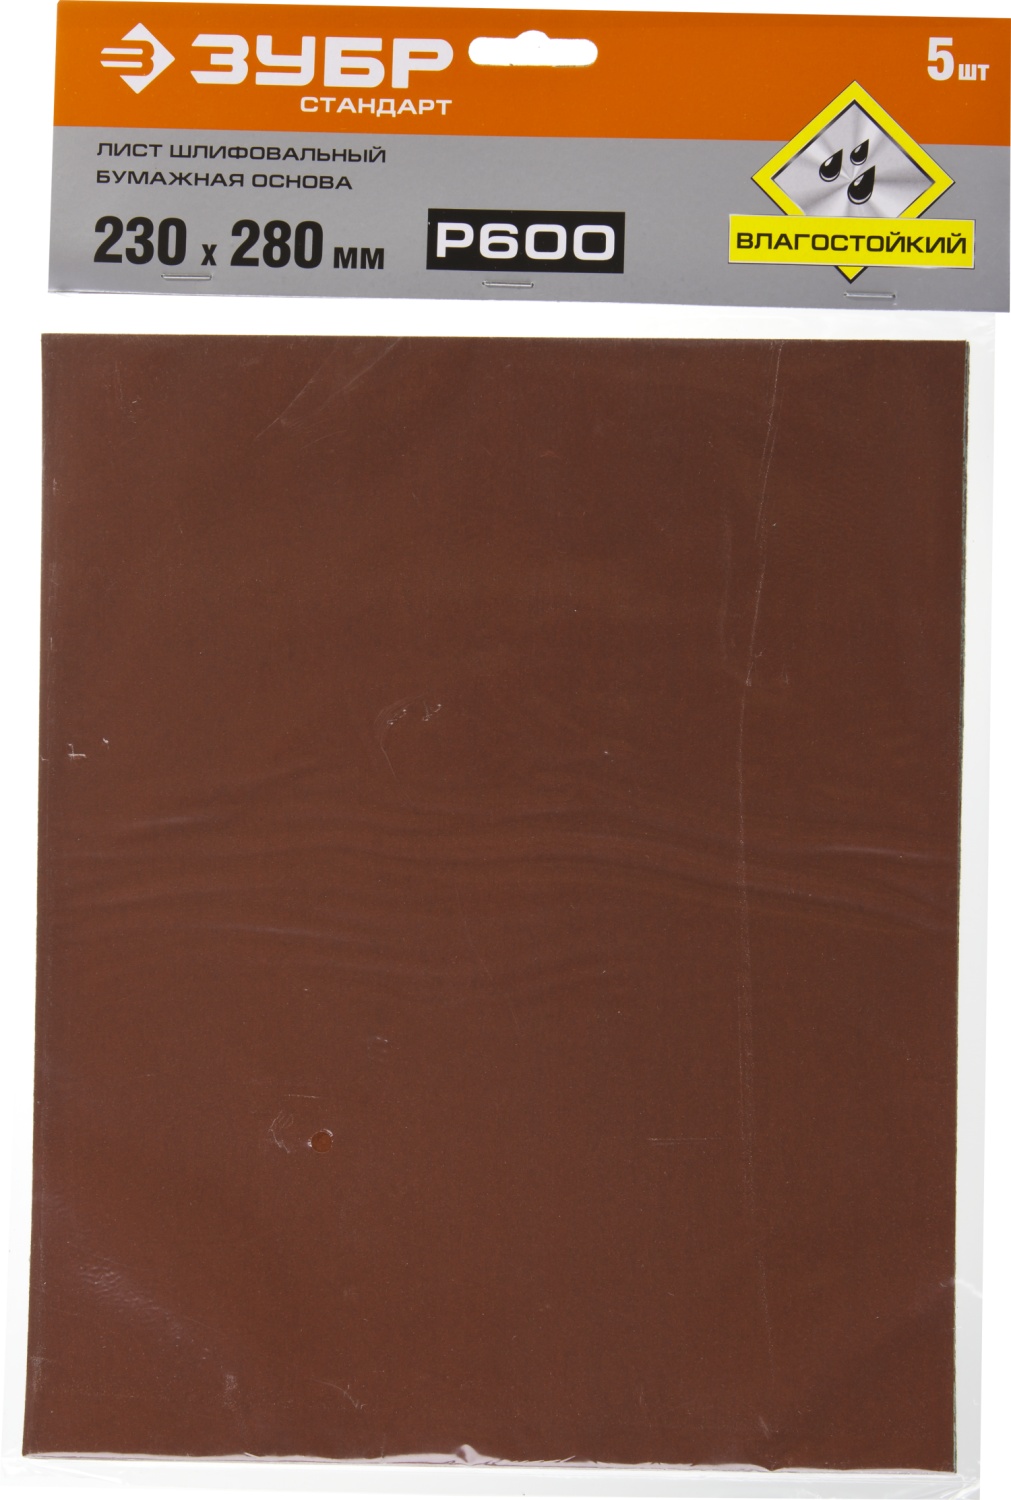 Лист шлифовальный водостойкий 230х280 мм Р-600 ЗУБР Стандарт 35417-600, бумажная основа, 5 шт - фото